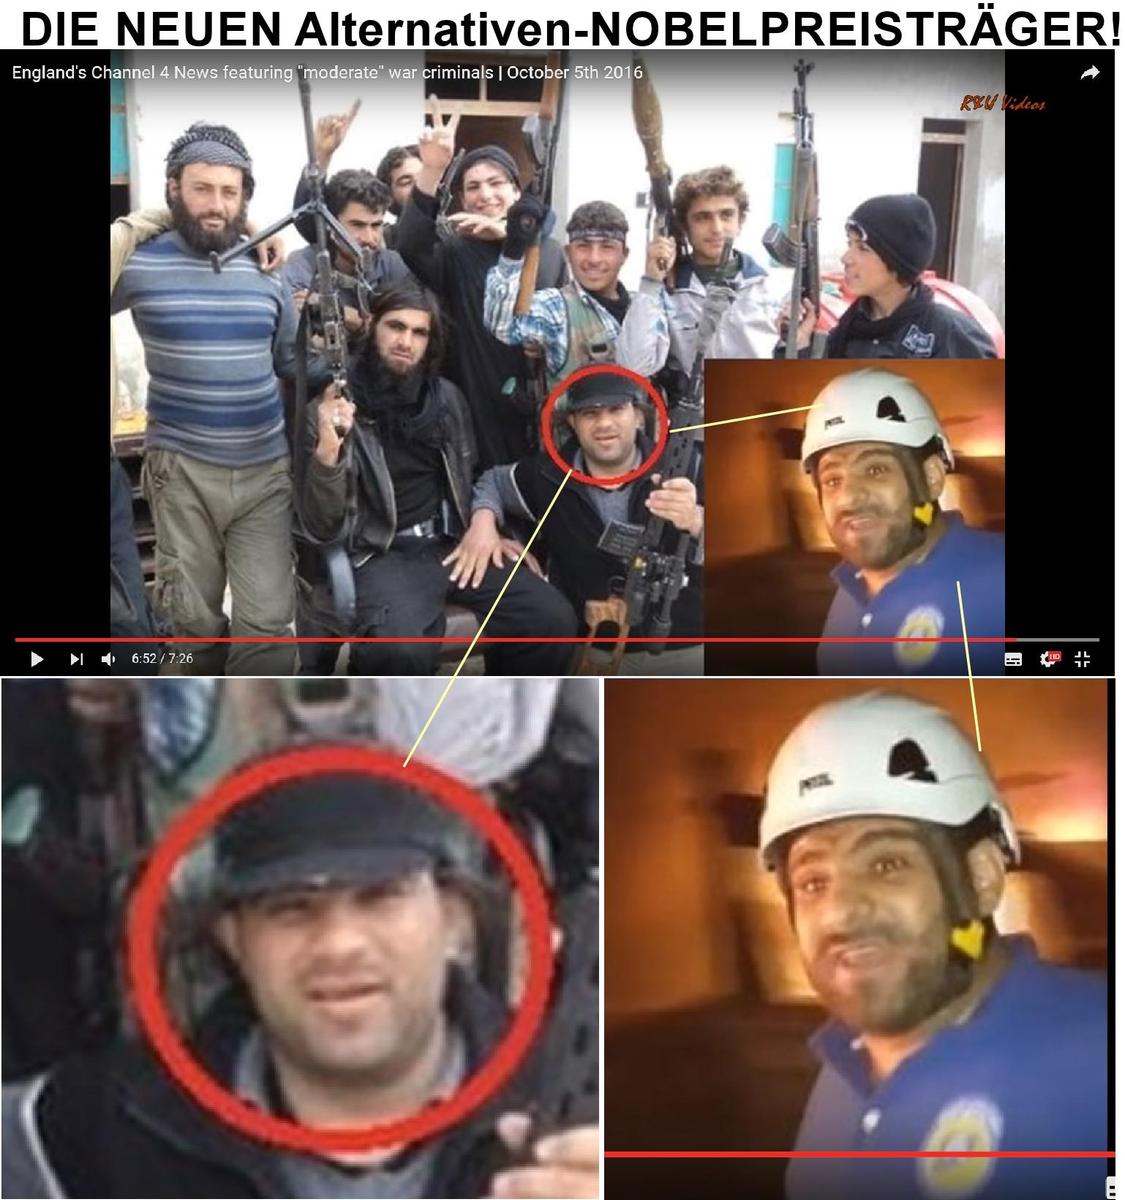 Terror White Helmets